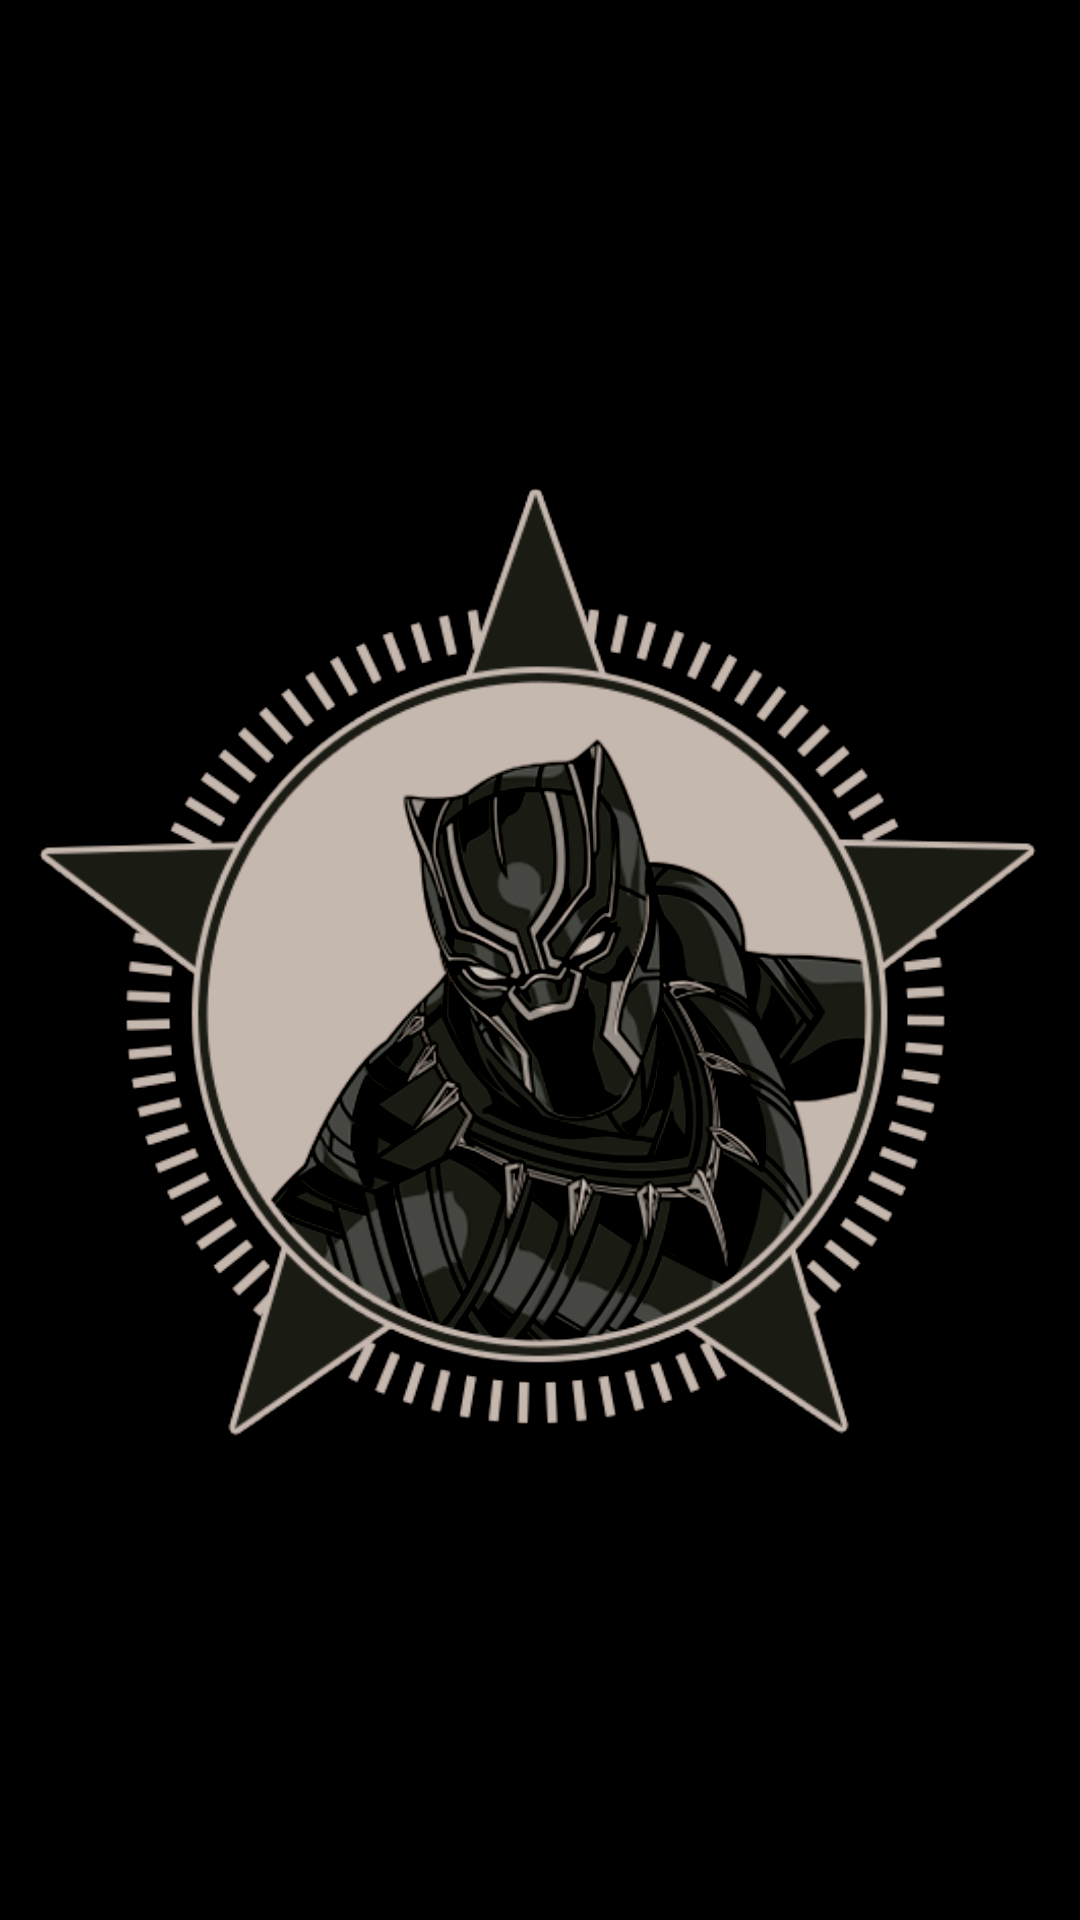 Black Panther Logo Wallpapers